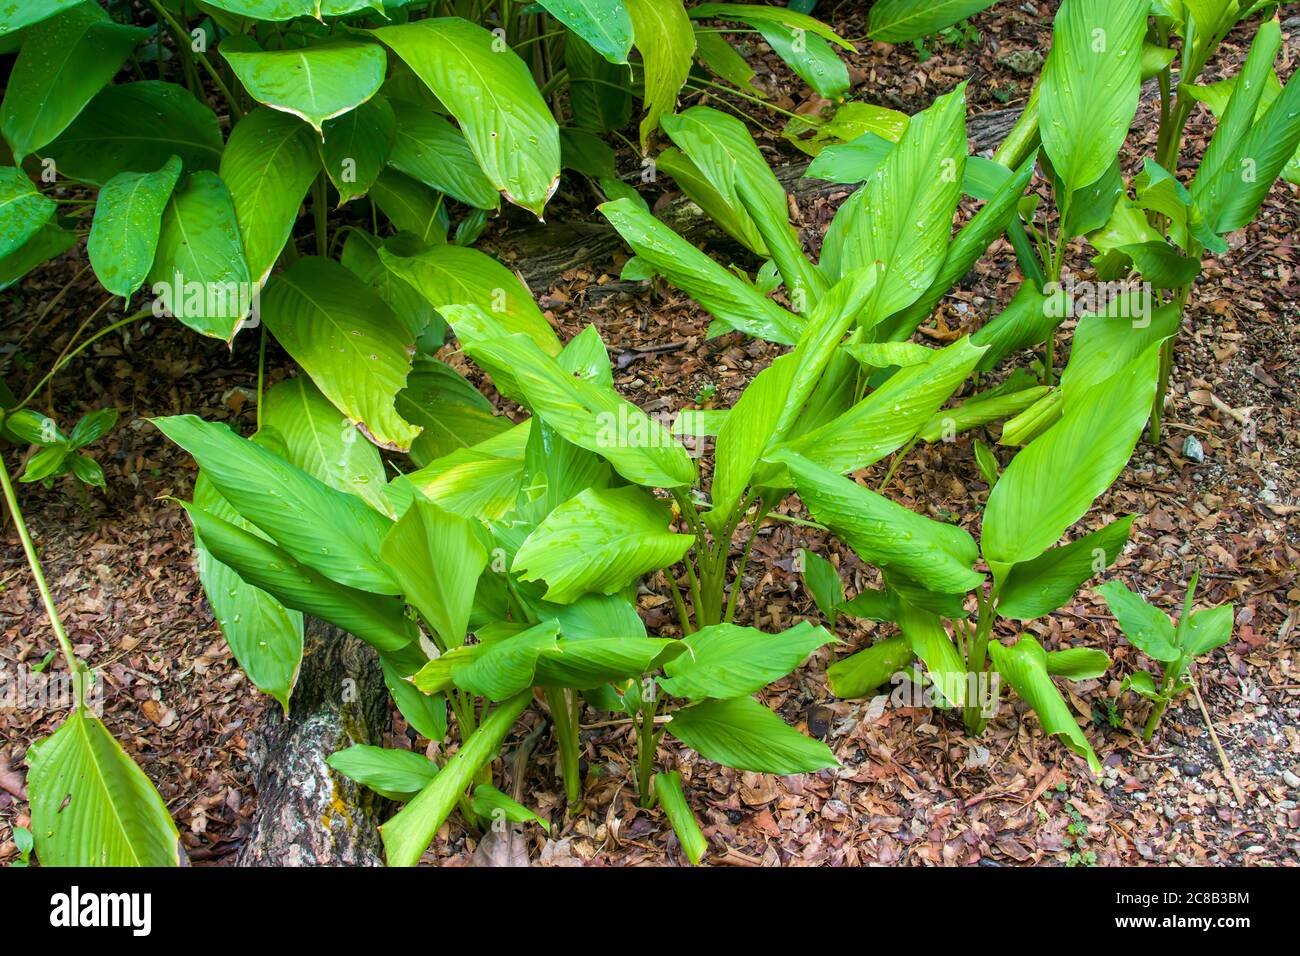 Kurkuma (Curcuma longa) ist eine blühende Pflanze, die Ingwerfamilie, Zingiberaceae, deren Wurzeln in der Küche verwendet werden. Stockfoto